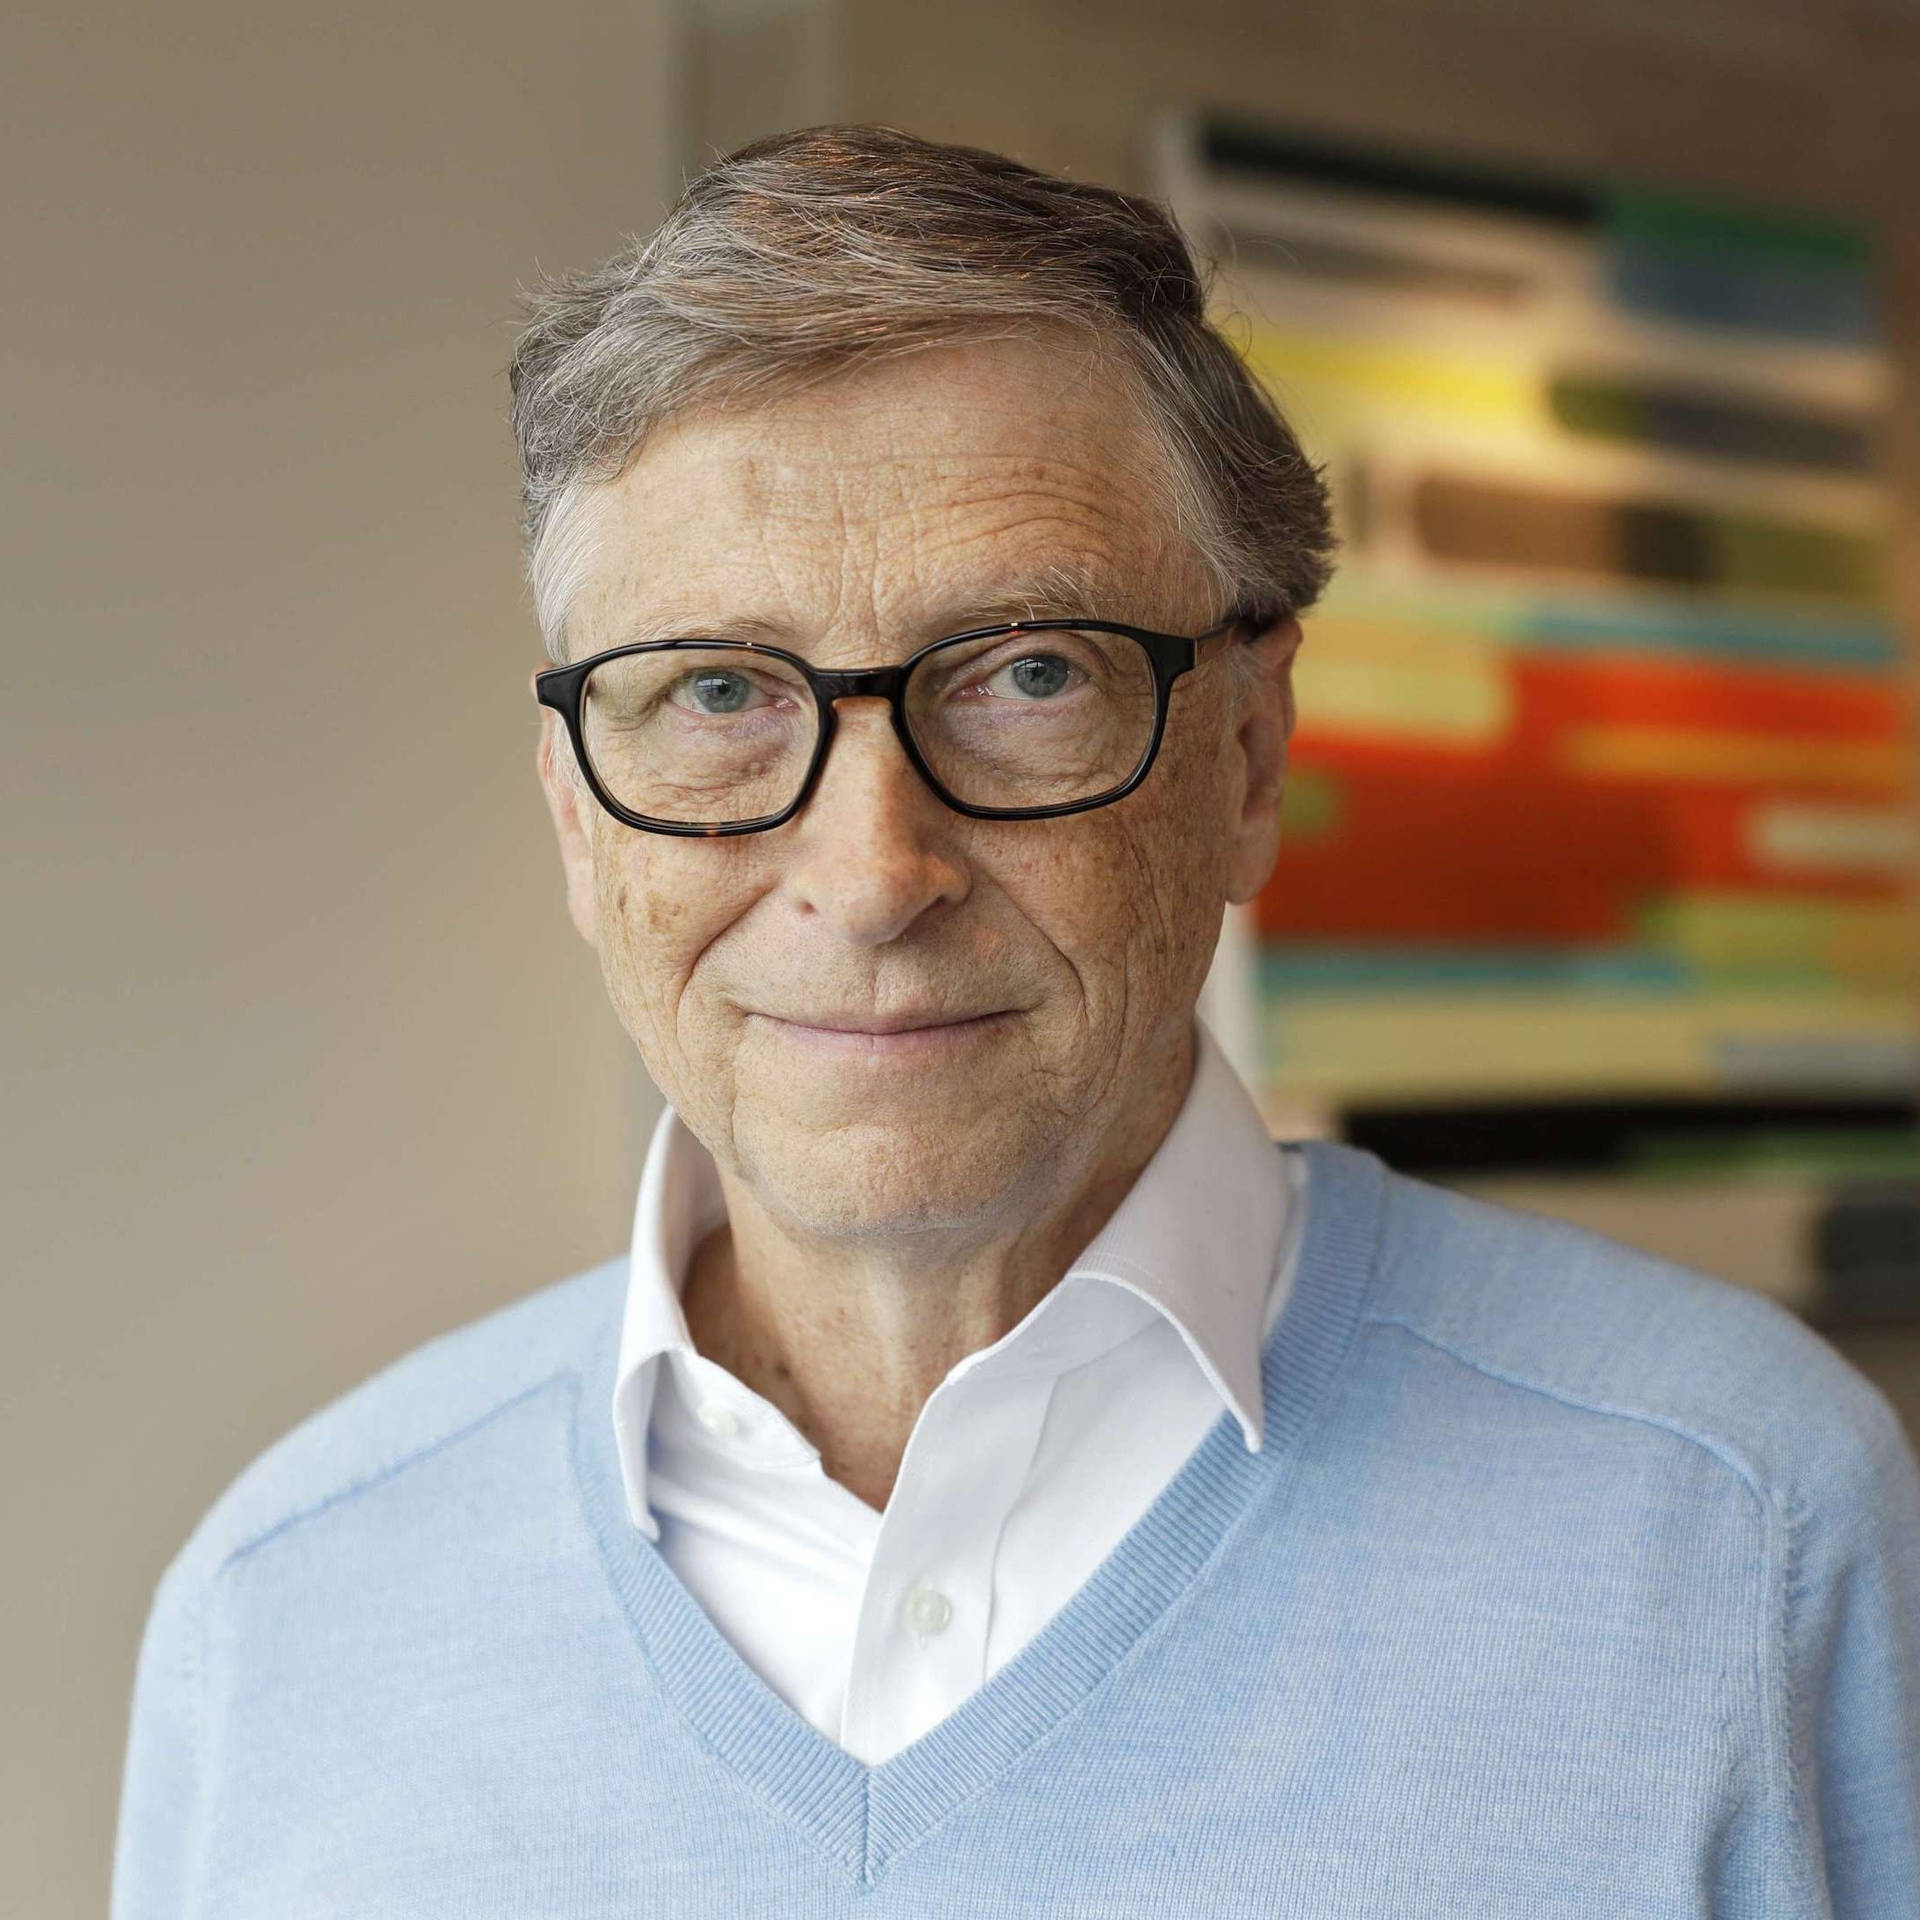 Bill Gates Deep Focus Face Background